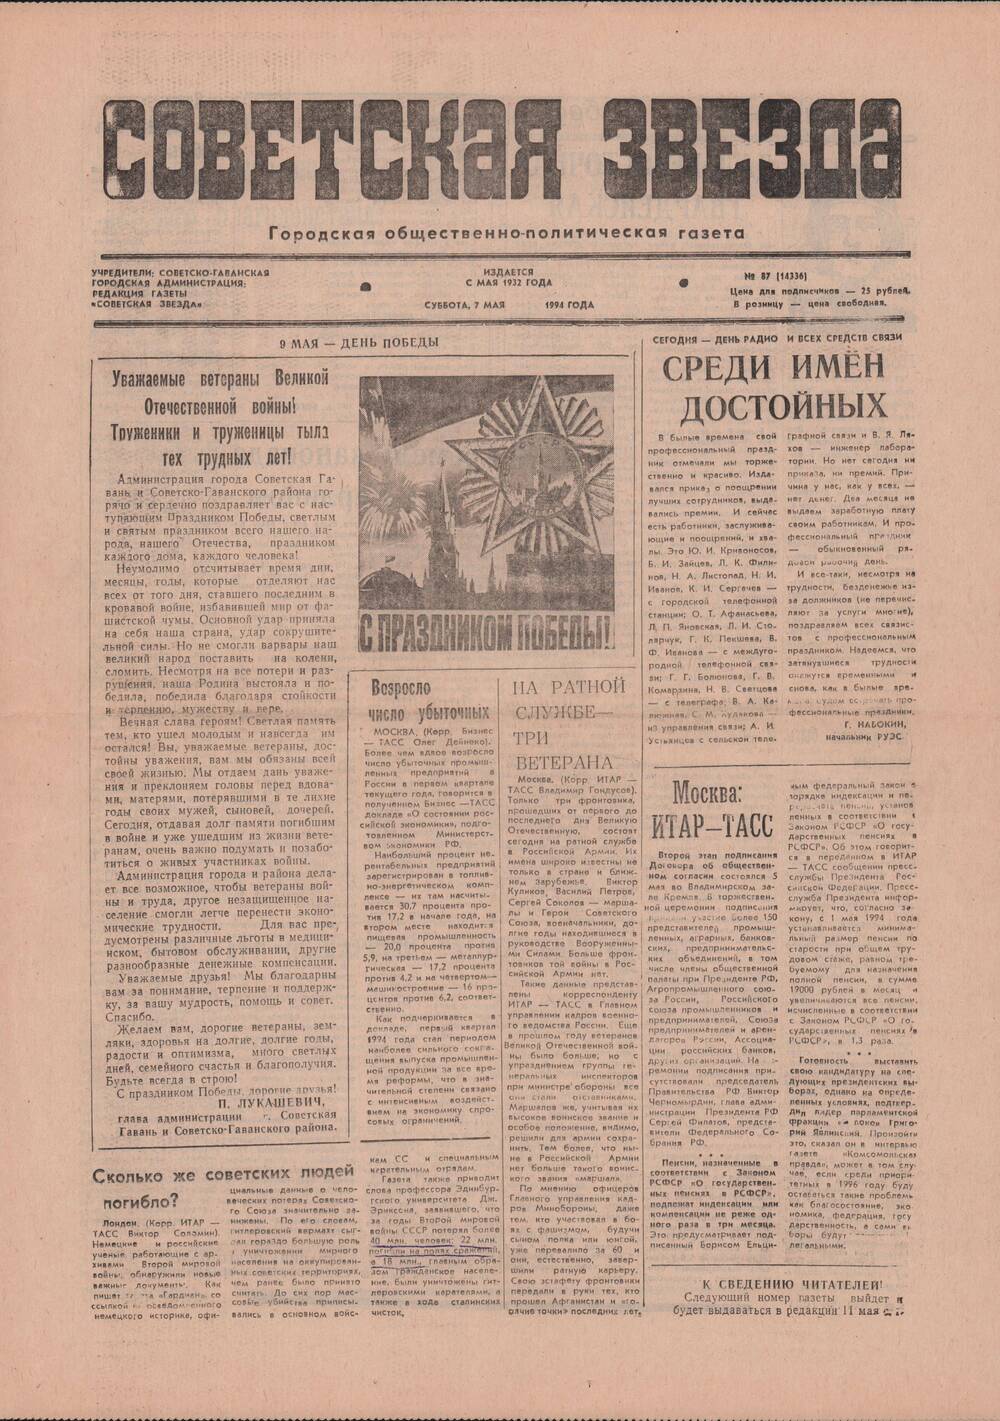 Газета «Советская звезда» № 87 (14336) от 07.05.1994 под рубрикой «50 лет Великой Победы».